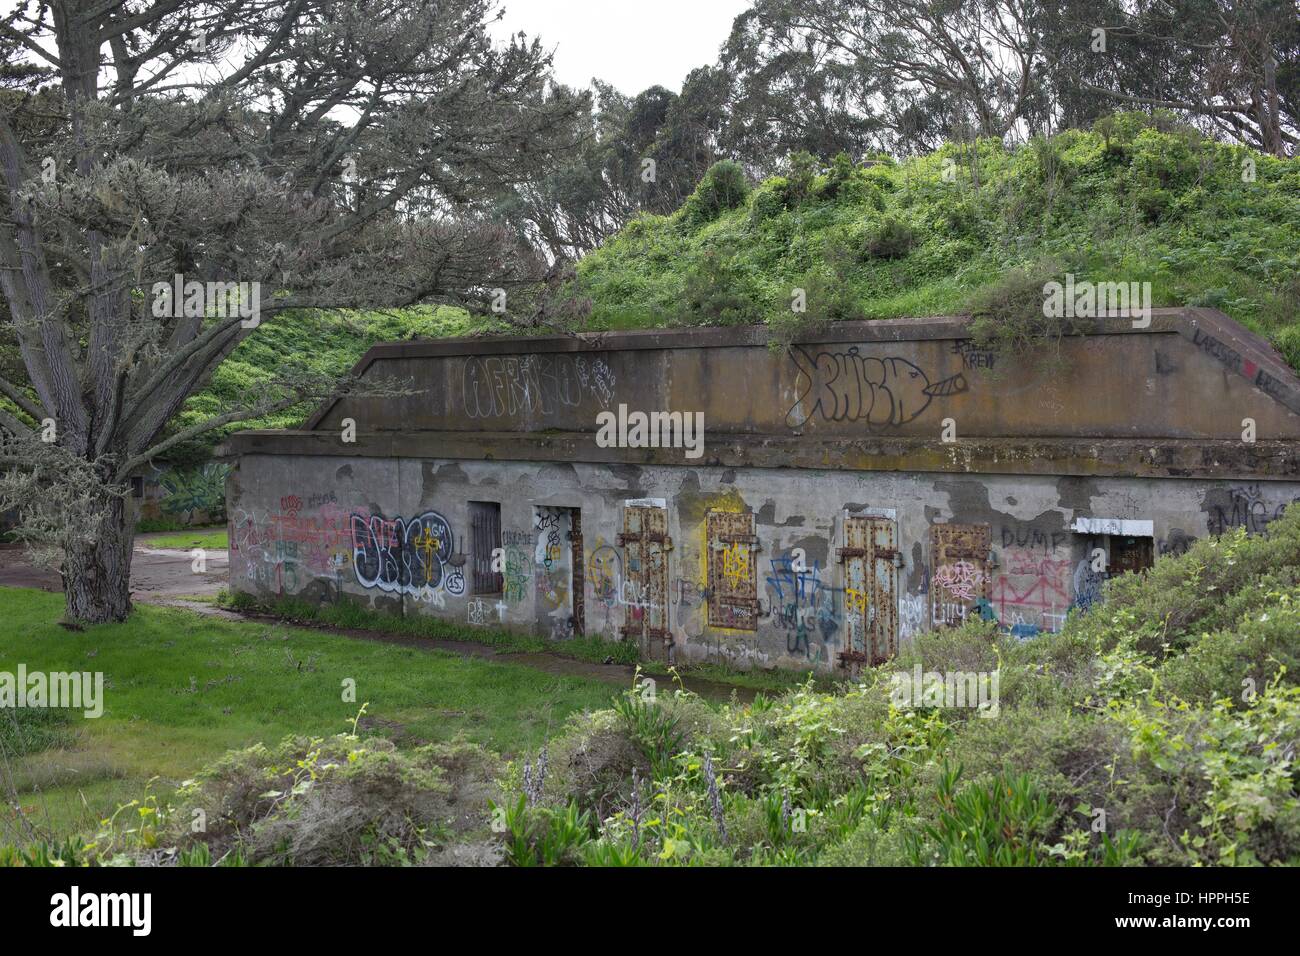 Graffiti cubre un puesto militar abandonado en Marin, CA, EE.UU. Foto de stock